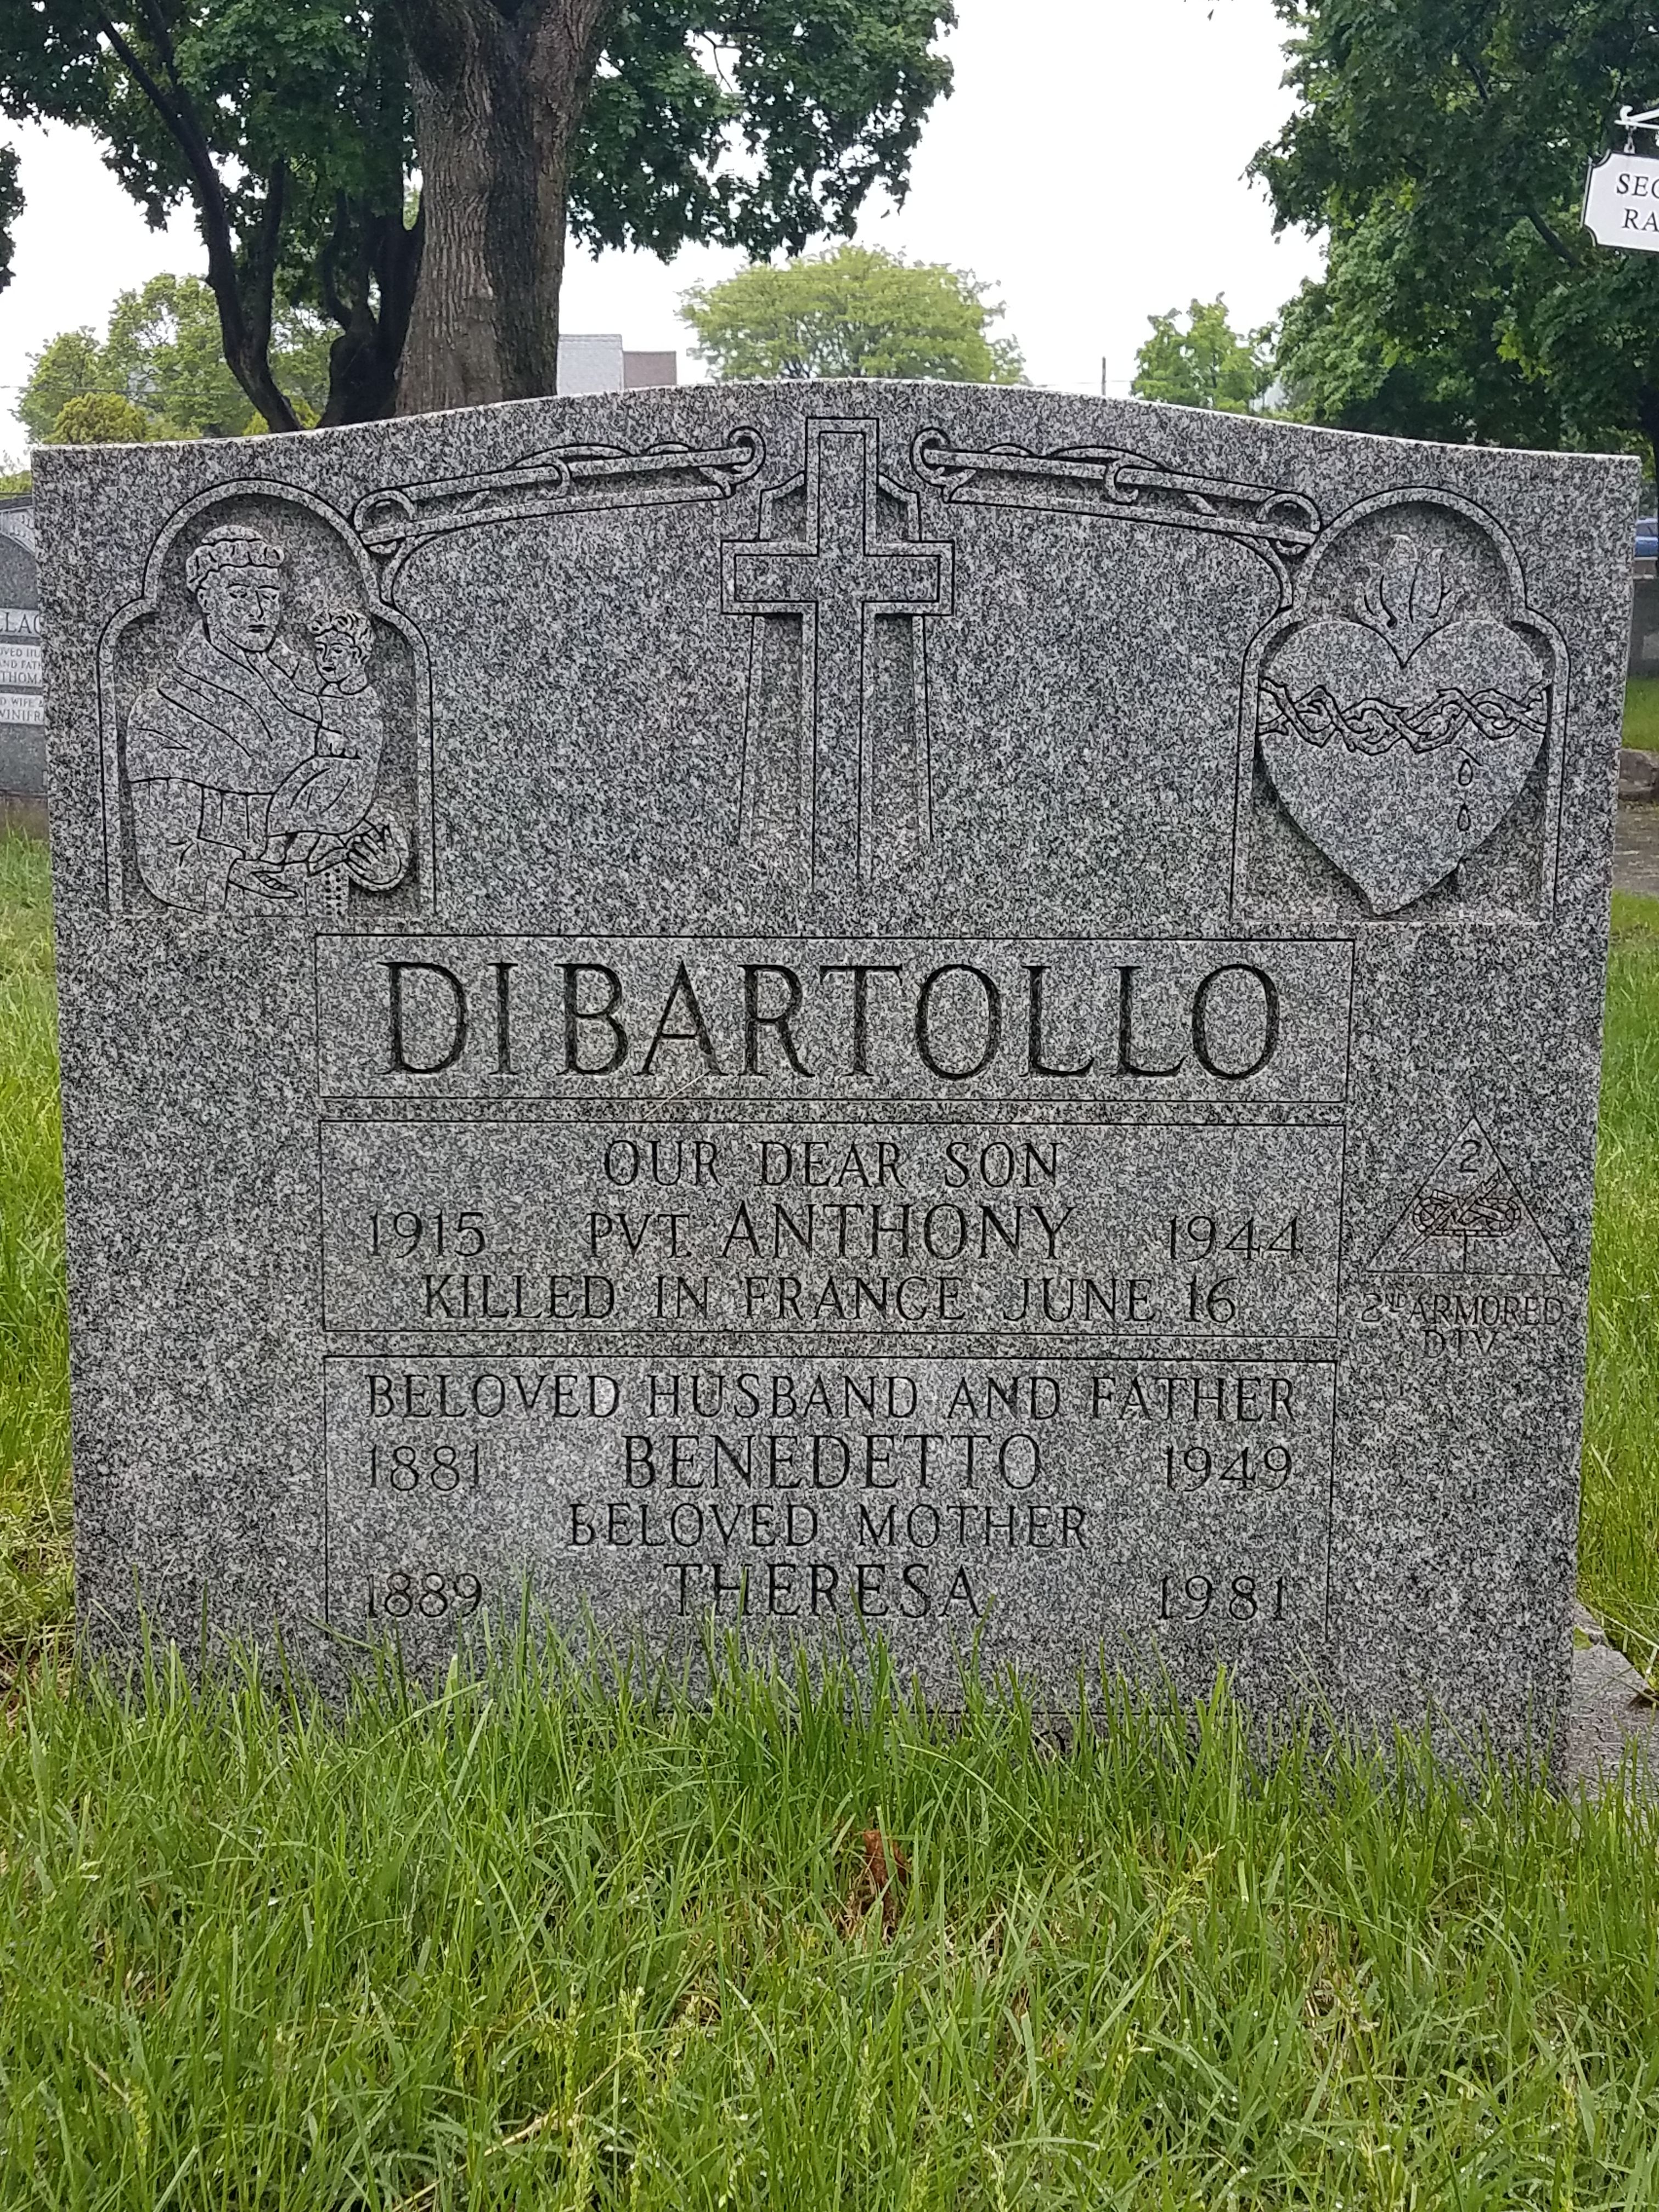 Headstone DiBartollo 3